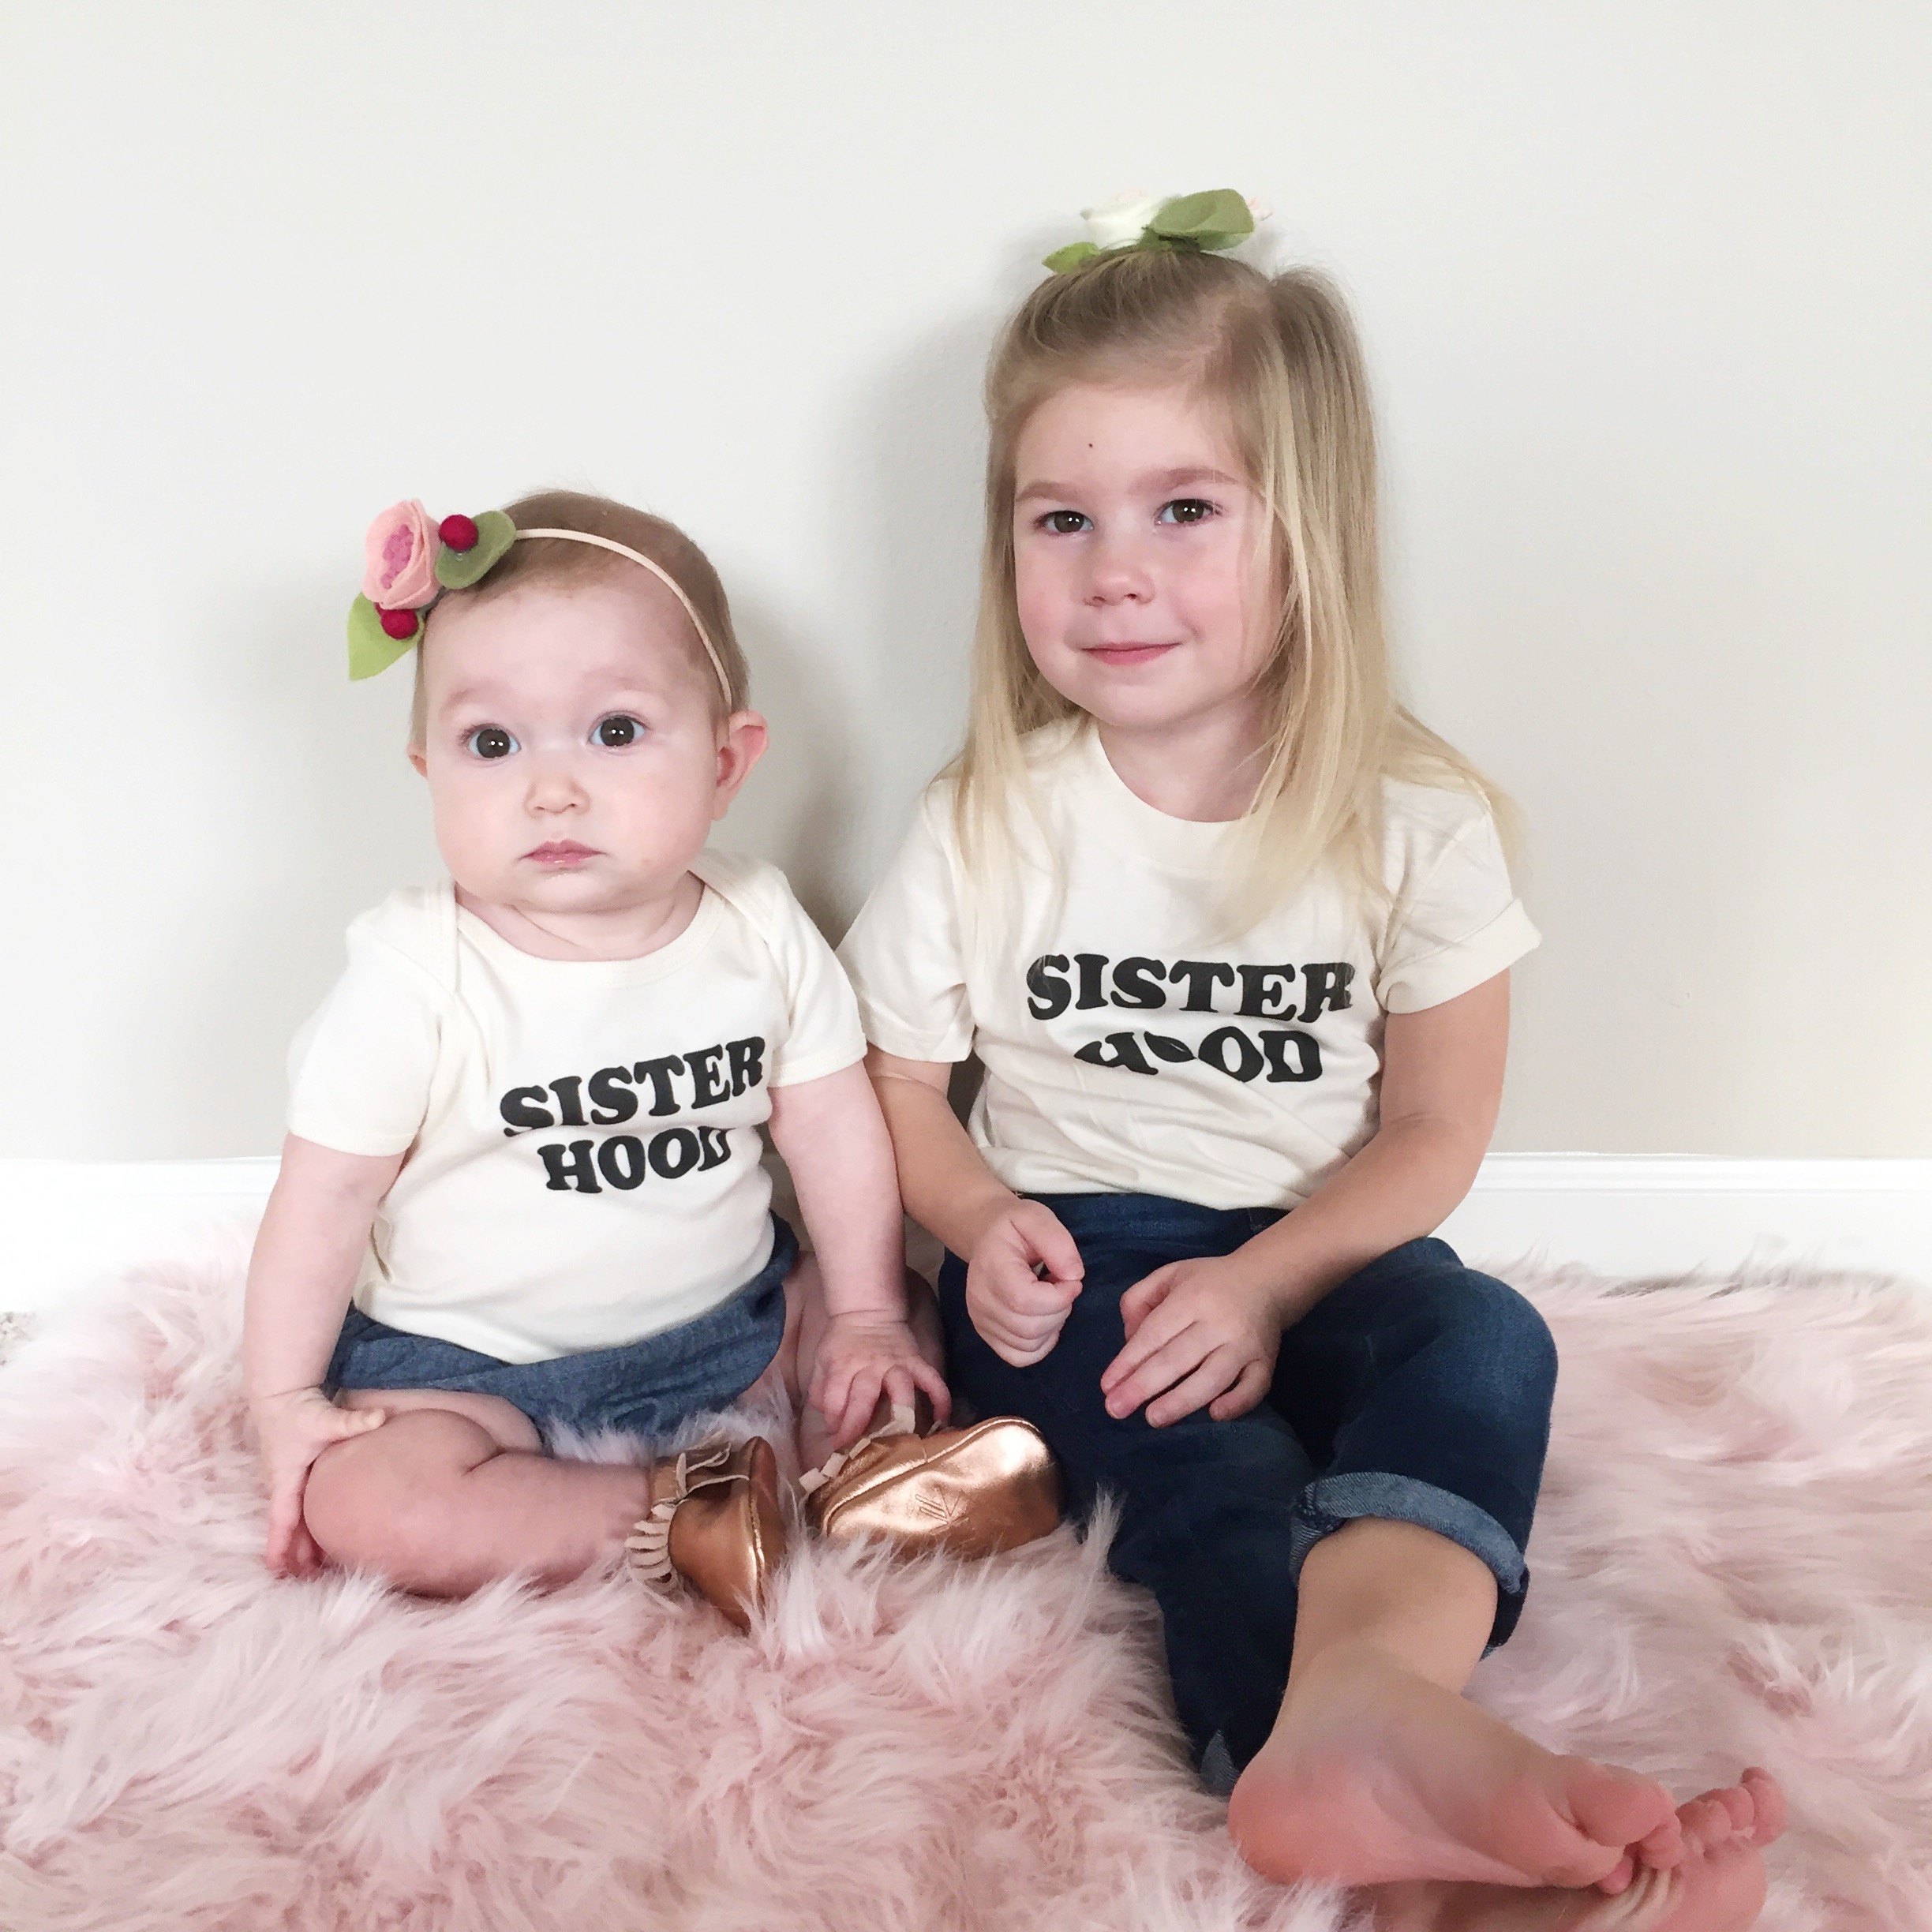 Sister photos, sister hood shirts, sister photo shoot 